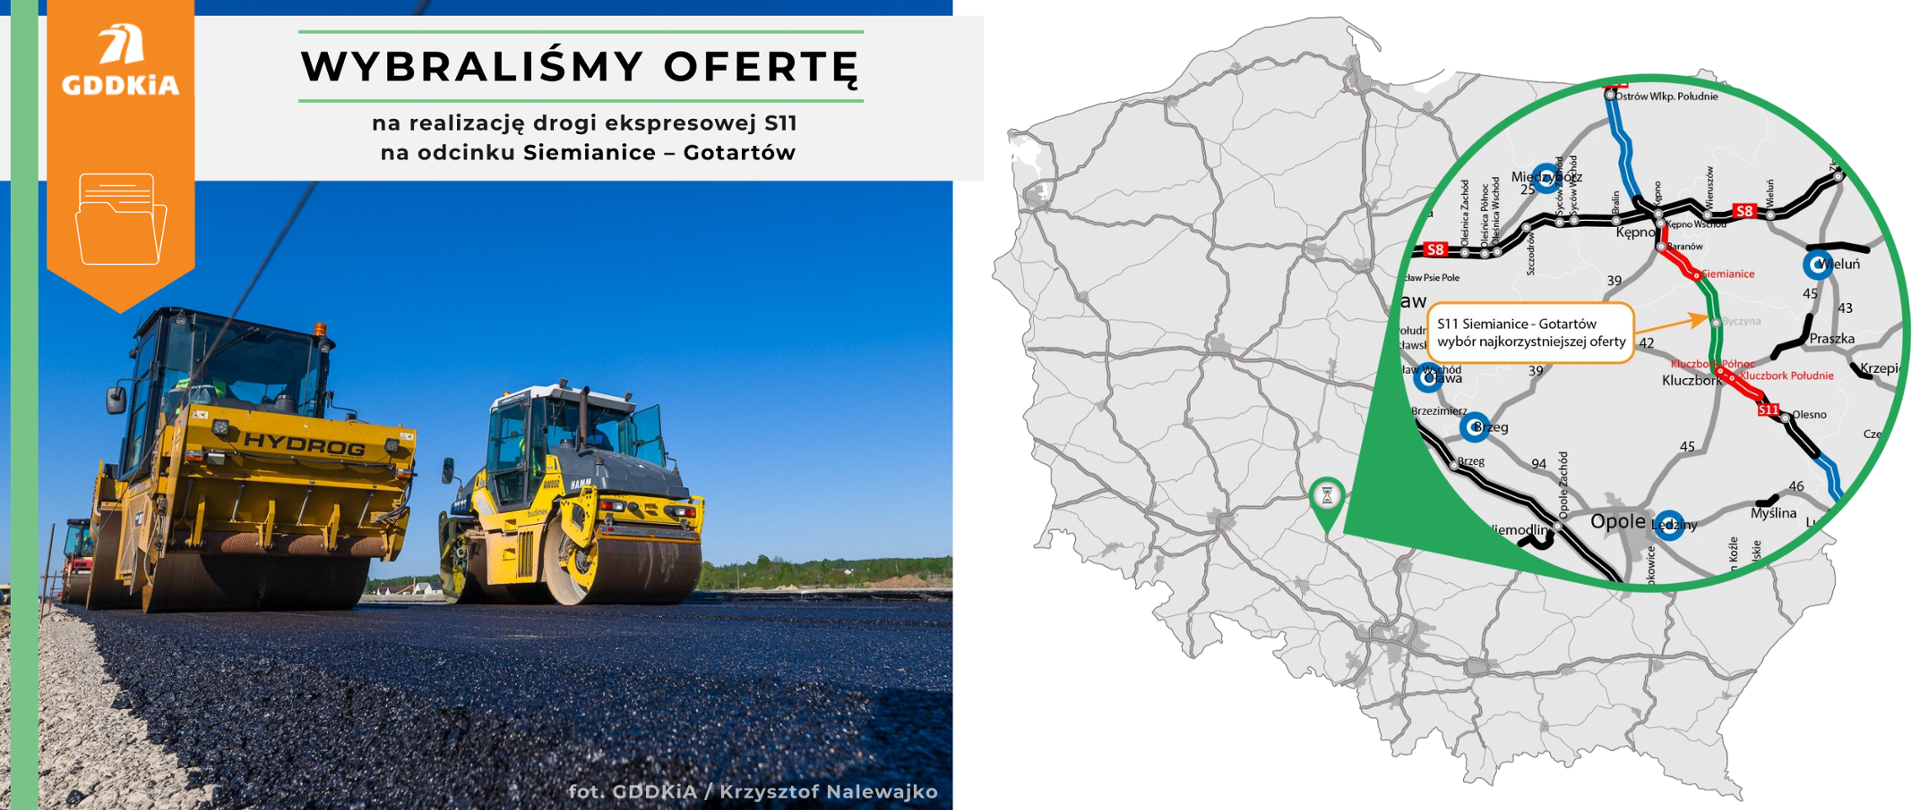 Grafika informująca o wybraniu najkorzystniejszej oferty na realizację drogi ekspresowej S11 na odcinku Siemianice - Gotartów. Po prawej mapa Polski z zaznaczonym odcinkiem drogi S11. Po prawej poglądowe zdjęcie robót budowlanych. Dwa walce wyrównujące świeżo wylaną warstwę nawierzchni asfaltowej.